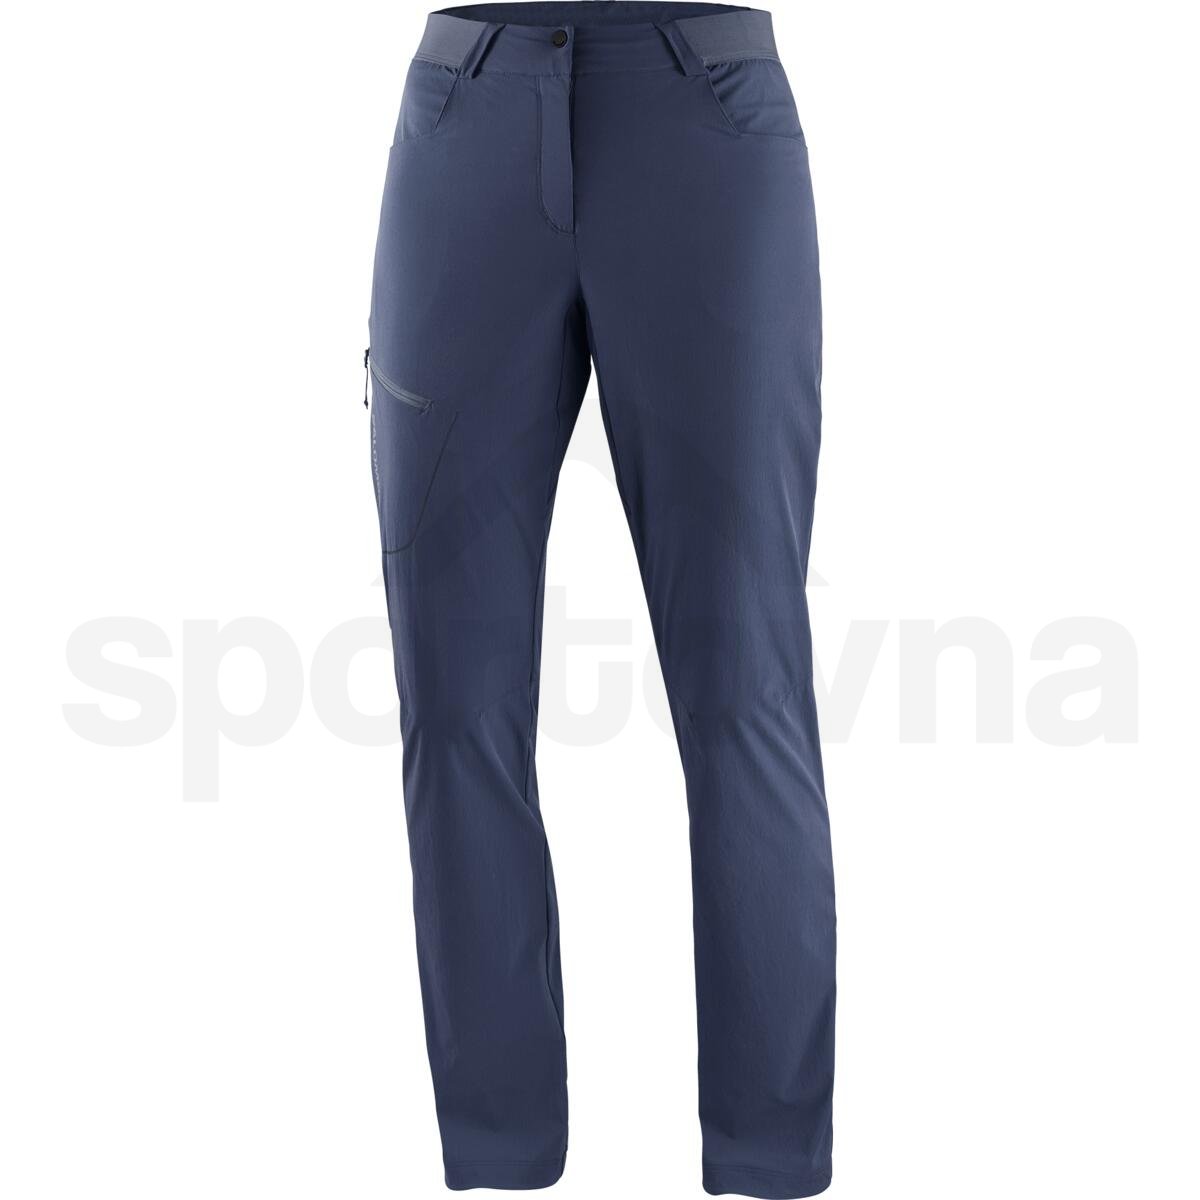 Kalhoty Salomon Wayfarer Pants W - modrá (standardní délka)